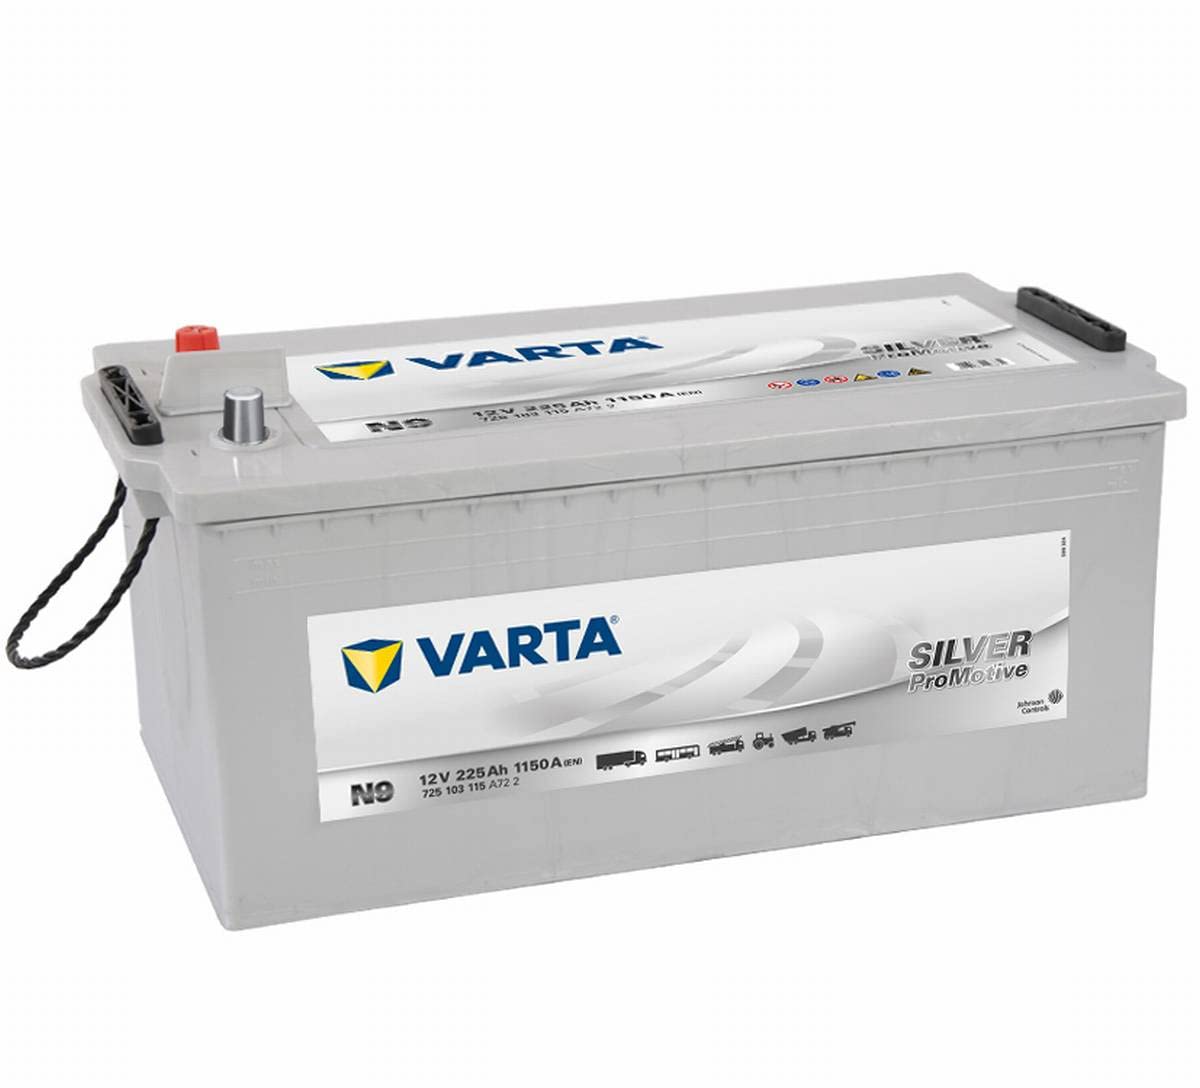 Varta Promotive Silver N9 - 12 V / 225 Ah - 1150 A / EN von Varta